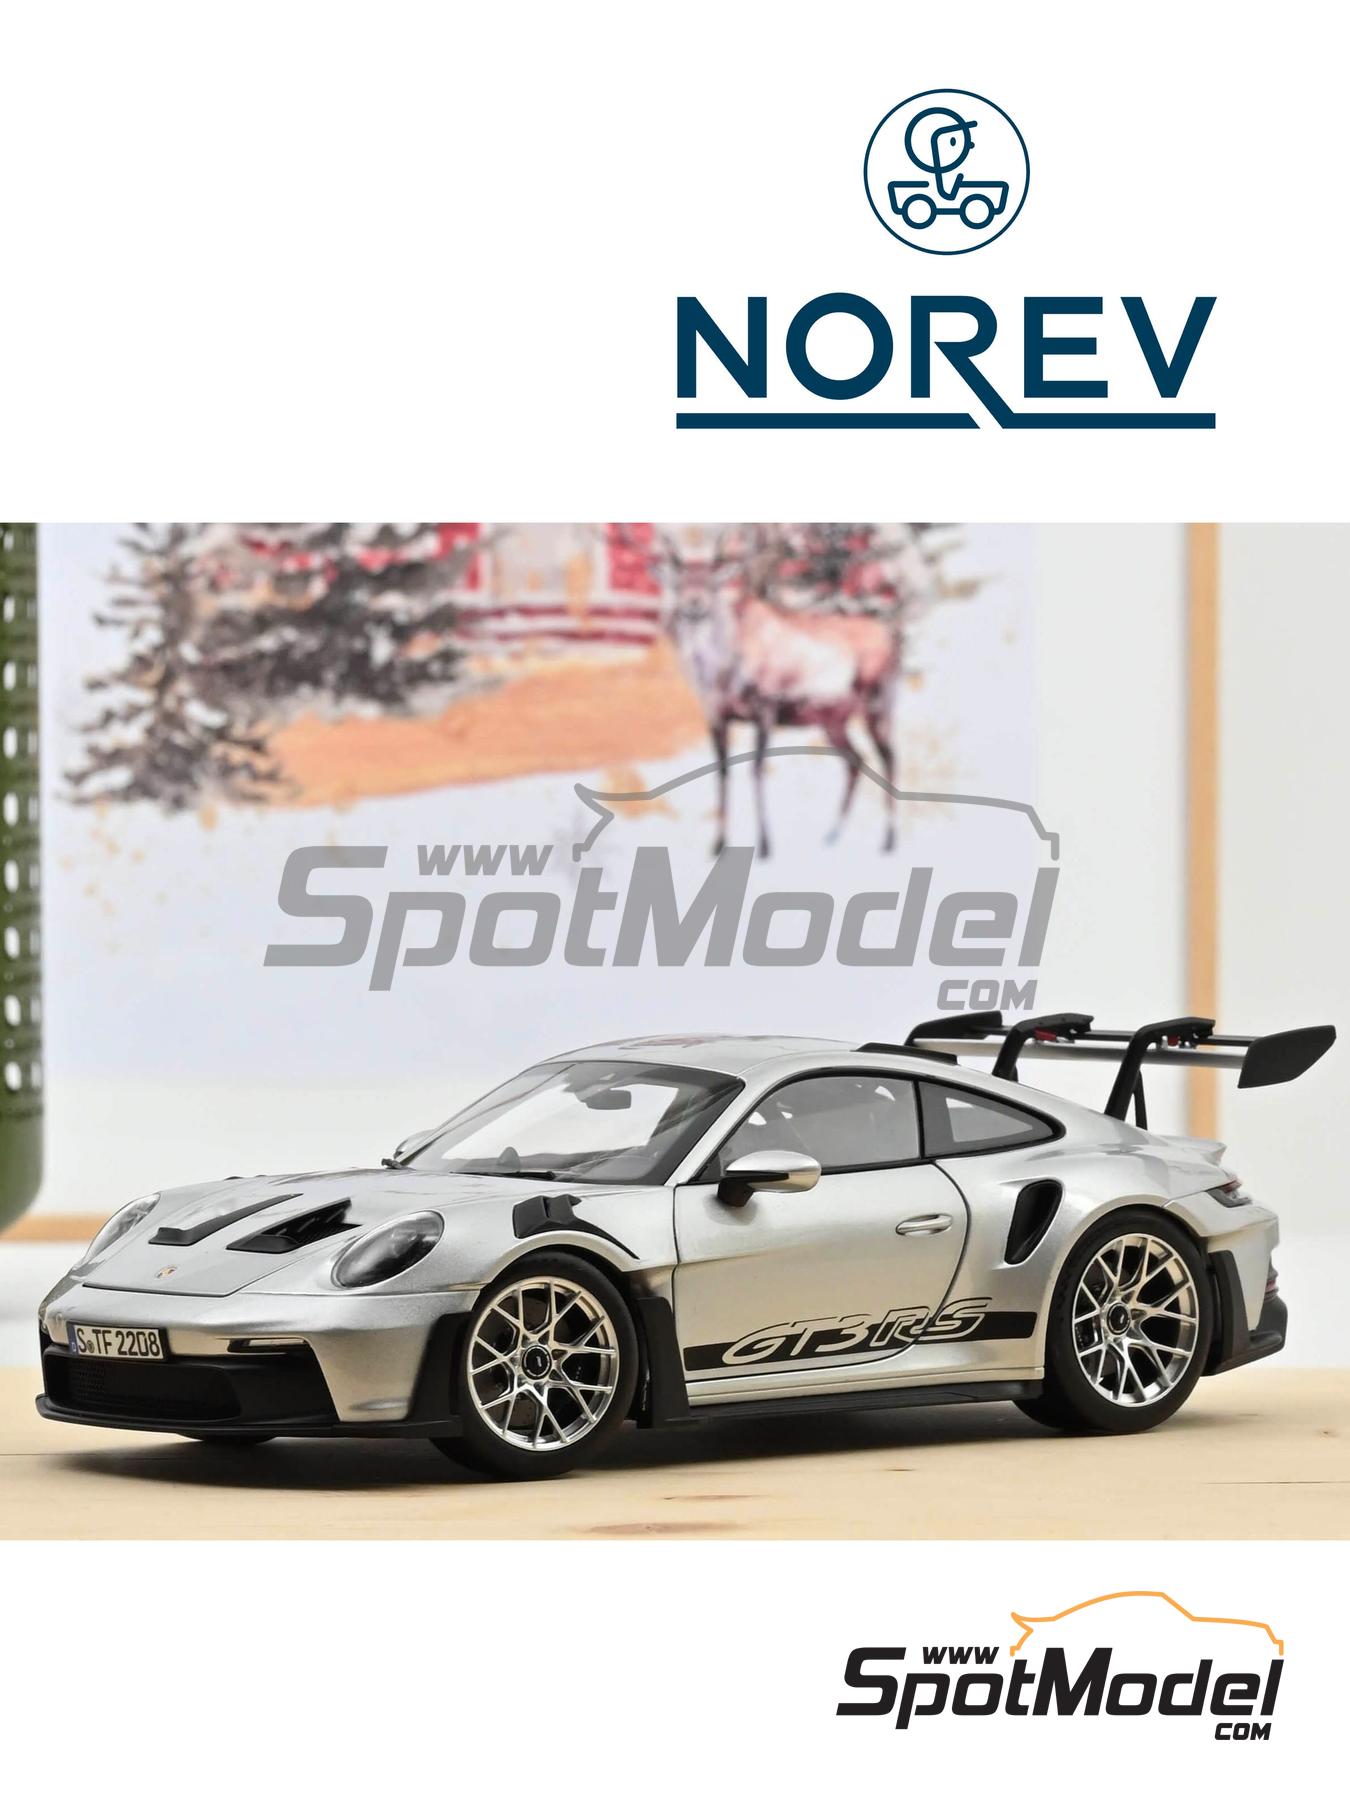 Voiture Miniature de Collection - NOREV 1/43 - PORSCHE 911 GT3 RS